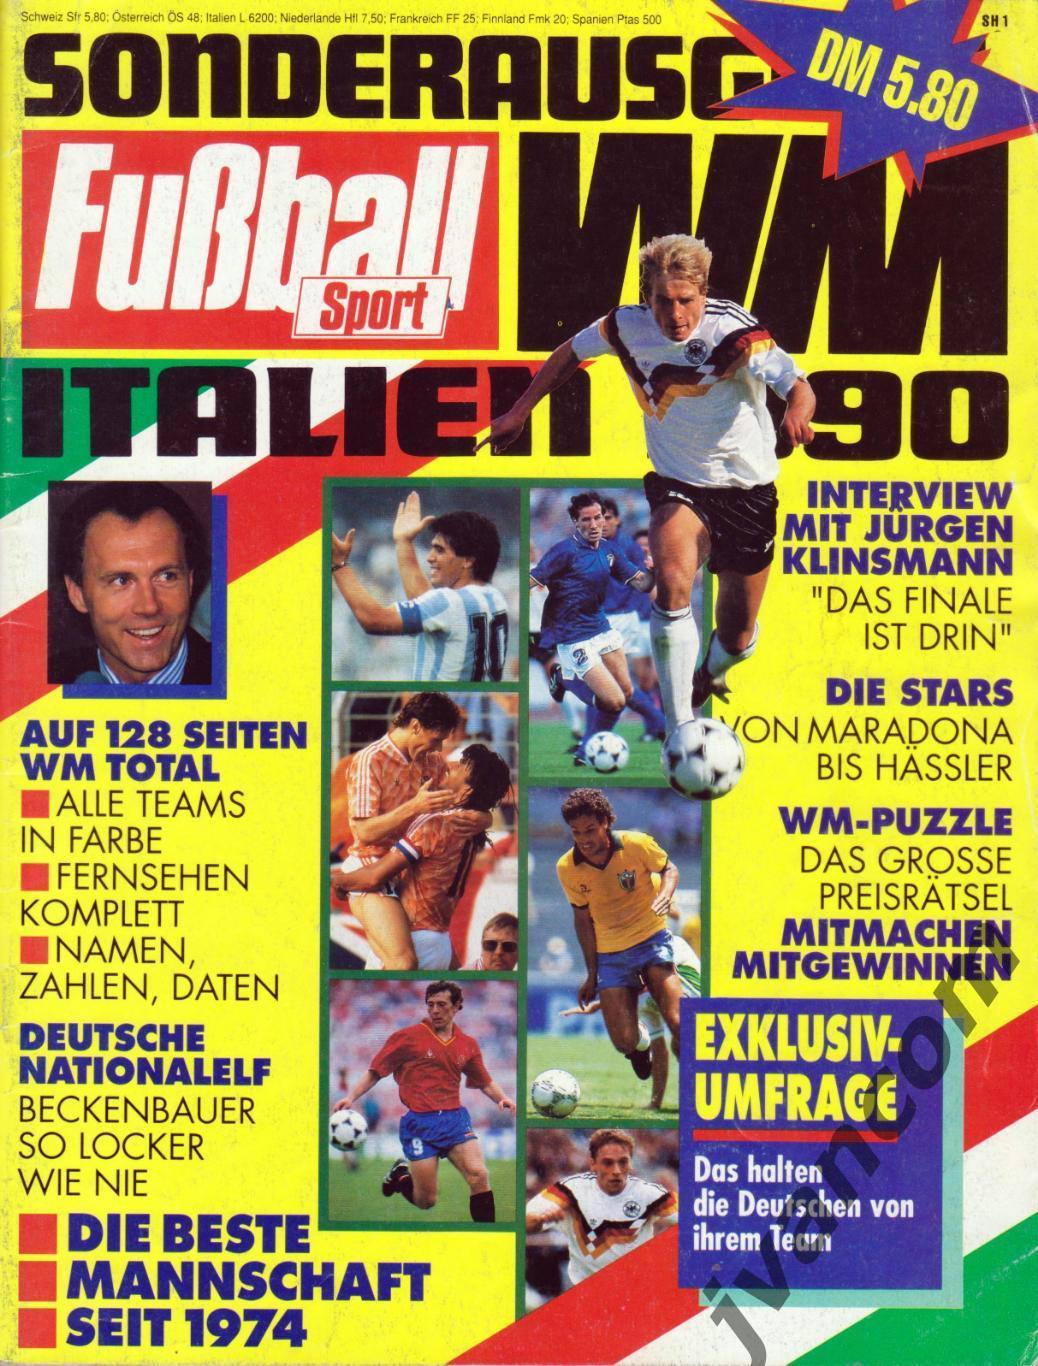 FUSSBALL SPORT. Чемпионат Мира по футболу 1990 года. Превью участников.